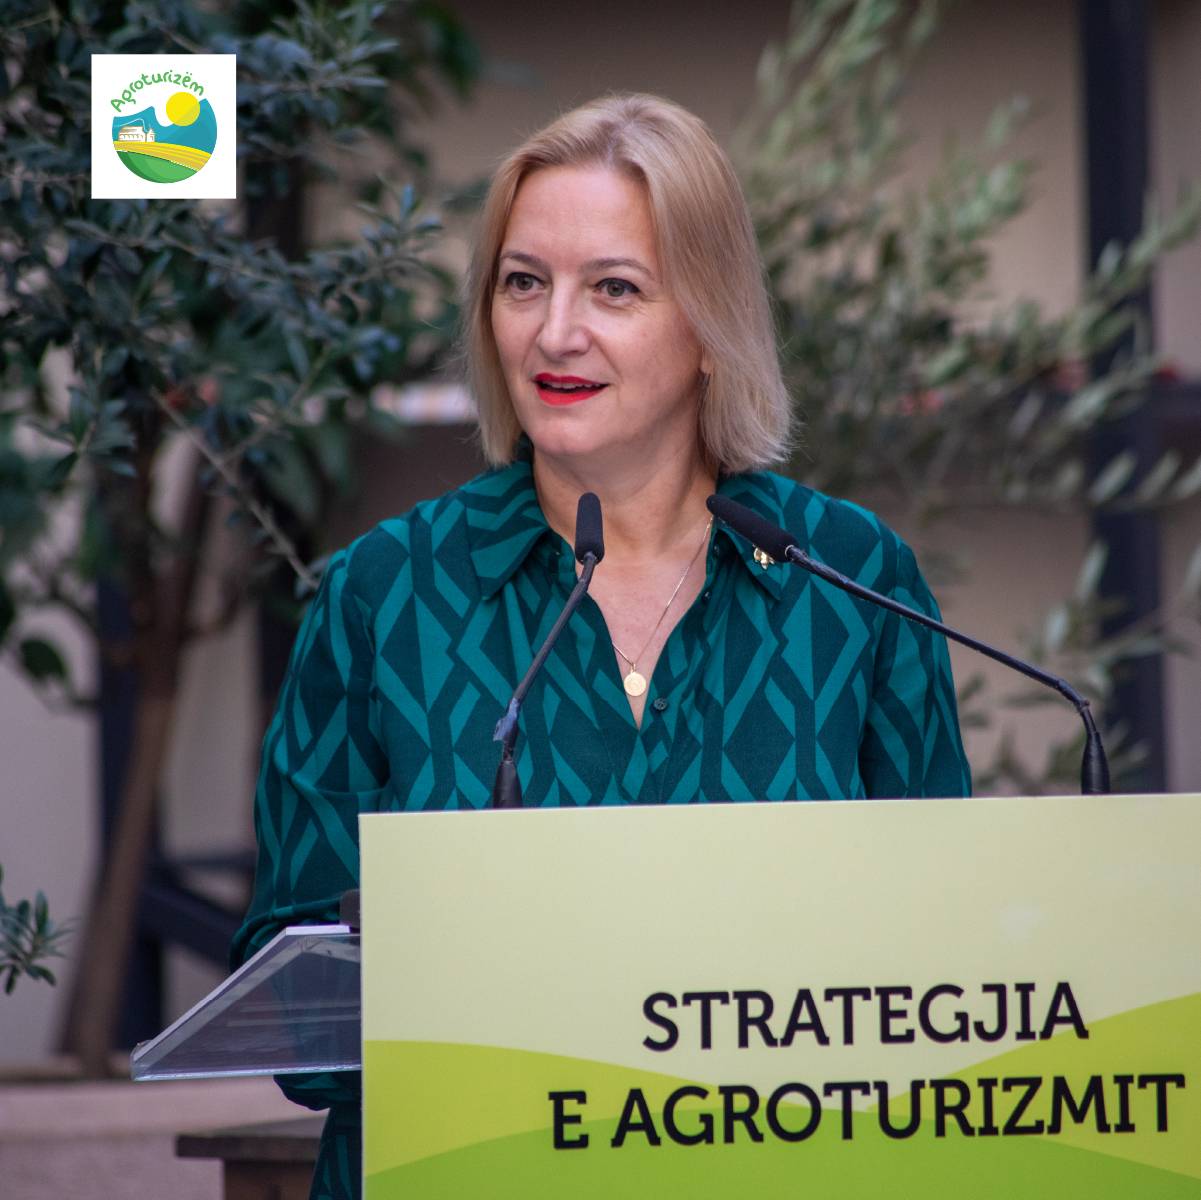 Ministrja e Bujqësisë Denaj në prezantimin e Strategjisë (Foto Gazeta Koha Jonë)